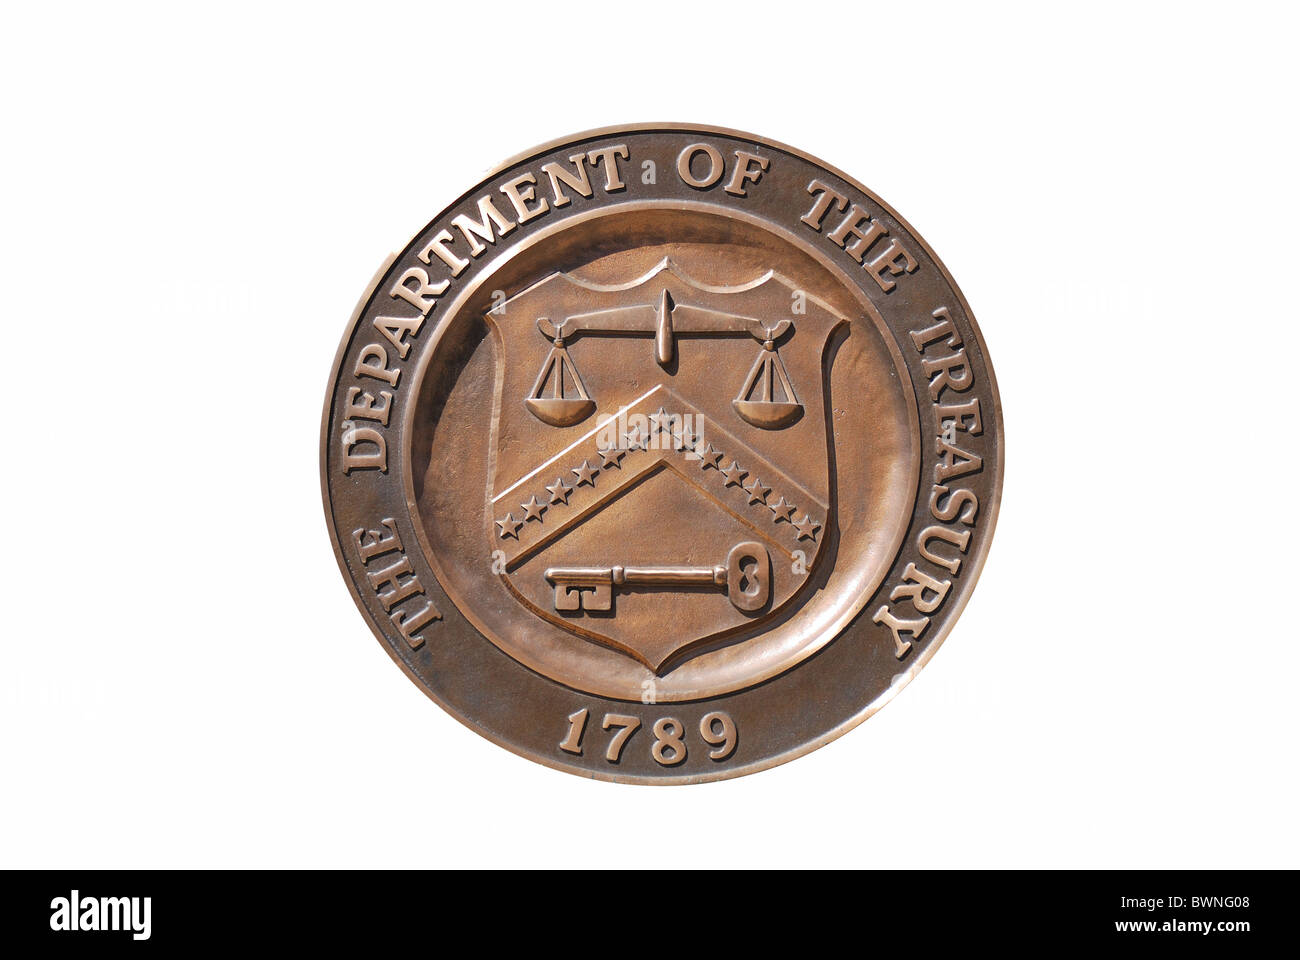 Marquage logo isolés de Washington DC, département du Trésor des États-Unis avec fond blanc Banque D'Images